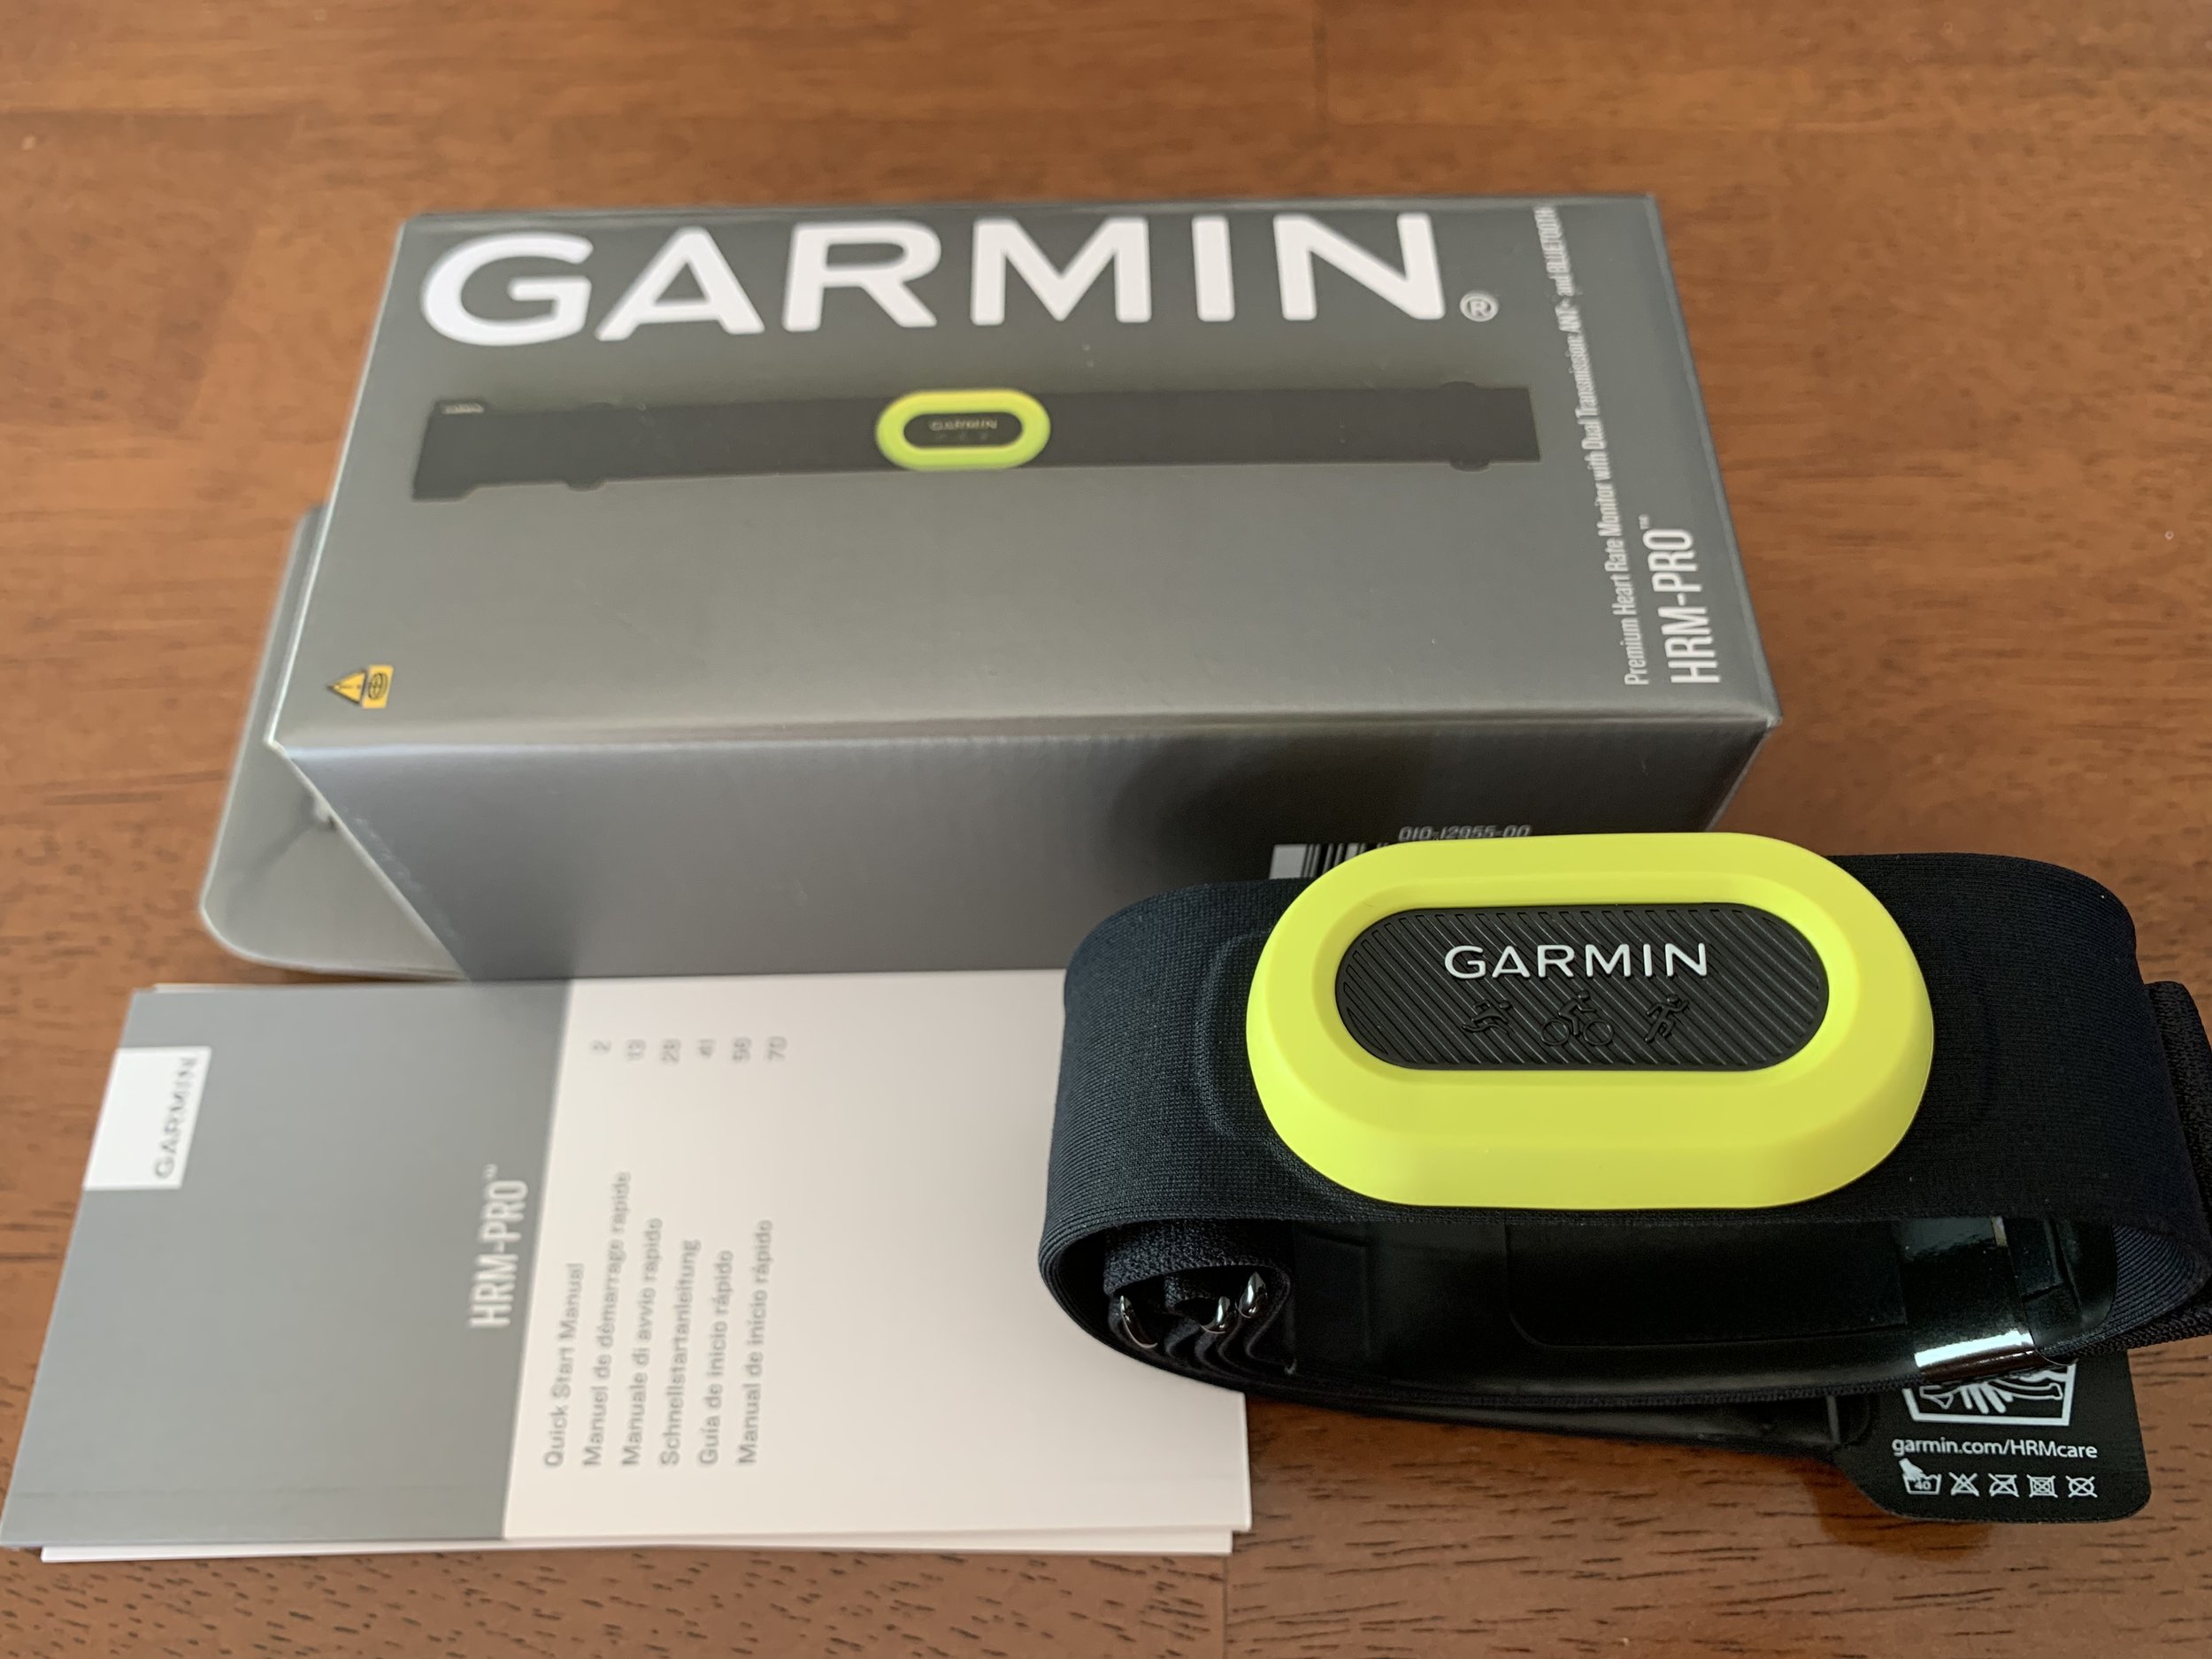 Garmin heart rate monitors compared